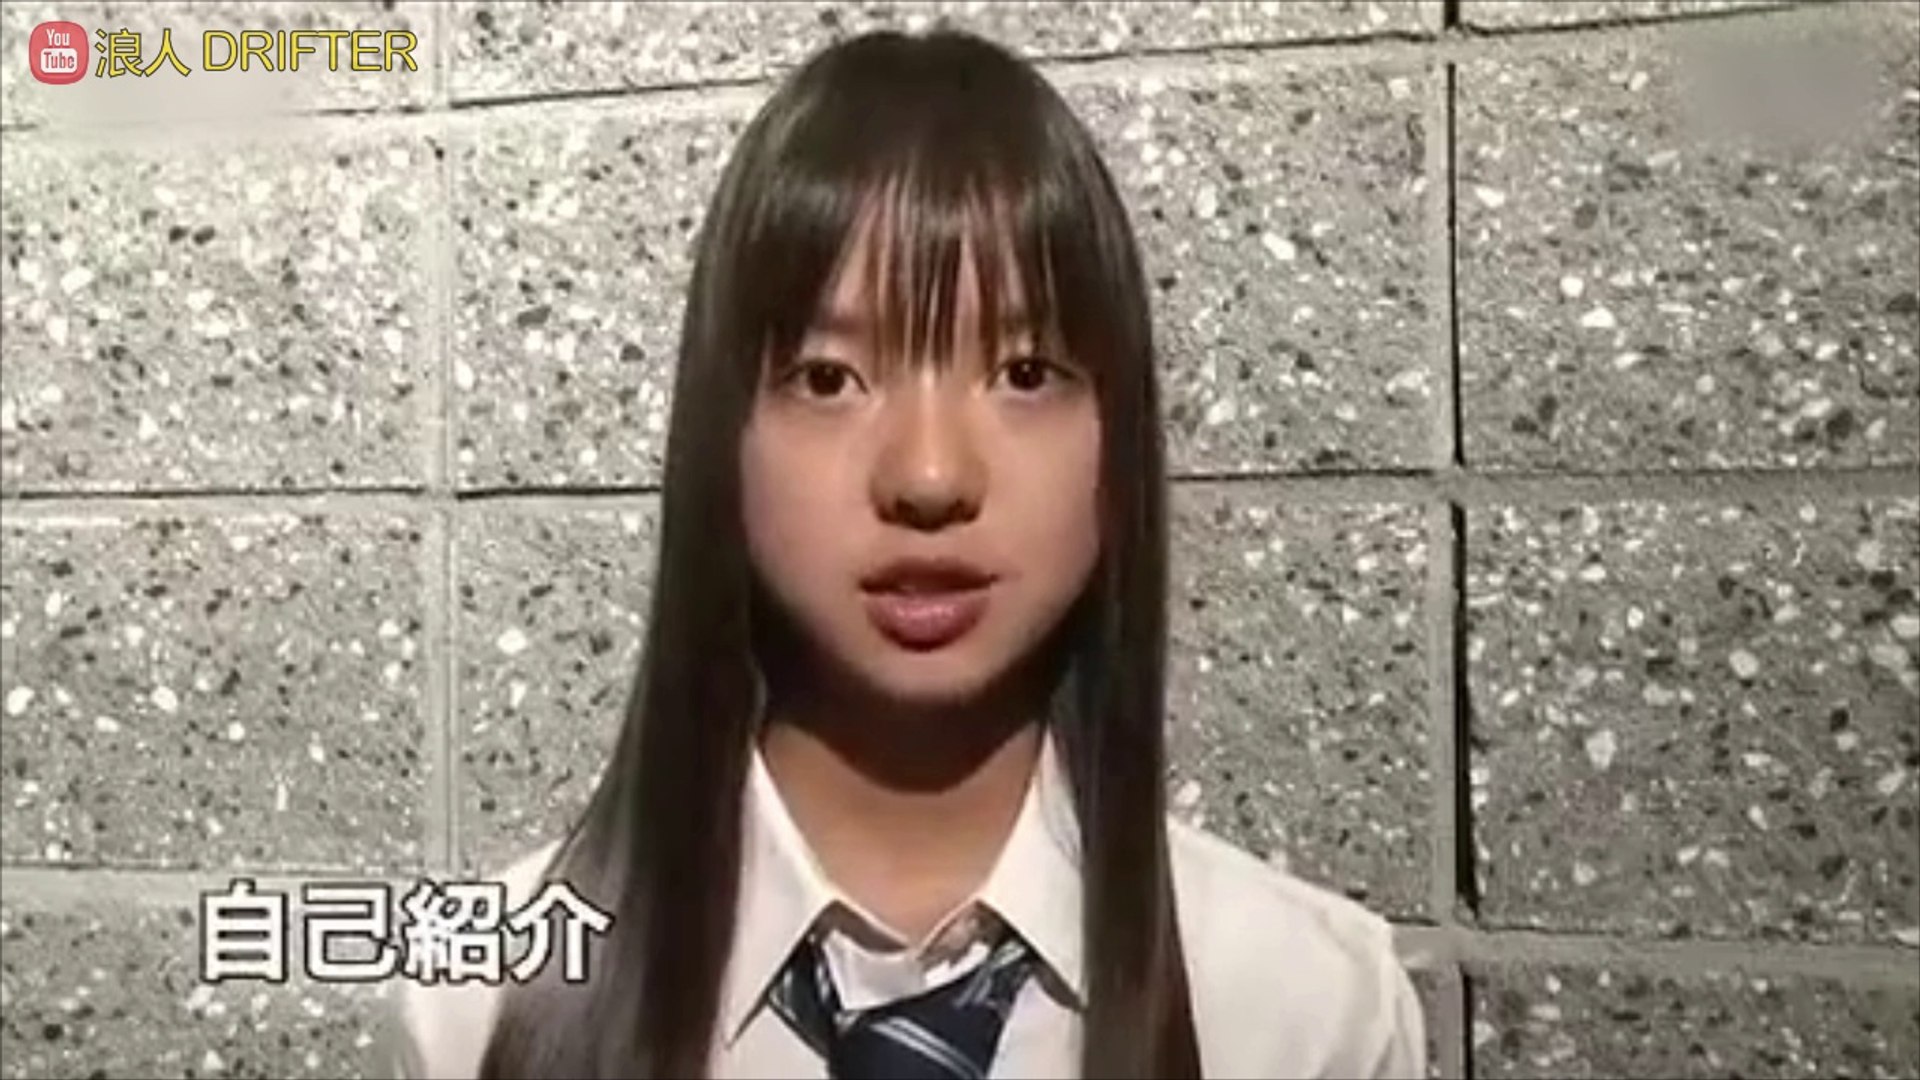 乃木坂46 和田まあや デビュー映像 Nogizaka46 Debut Wada Maaya Video Dailymotion